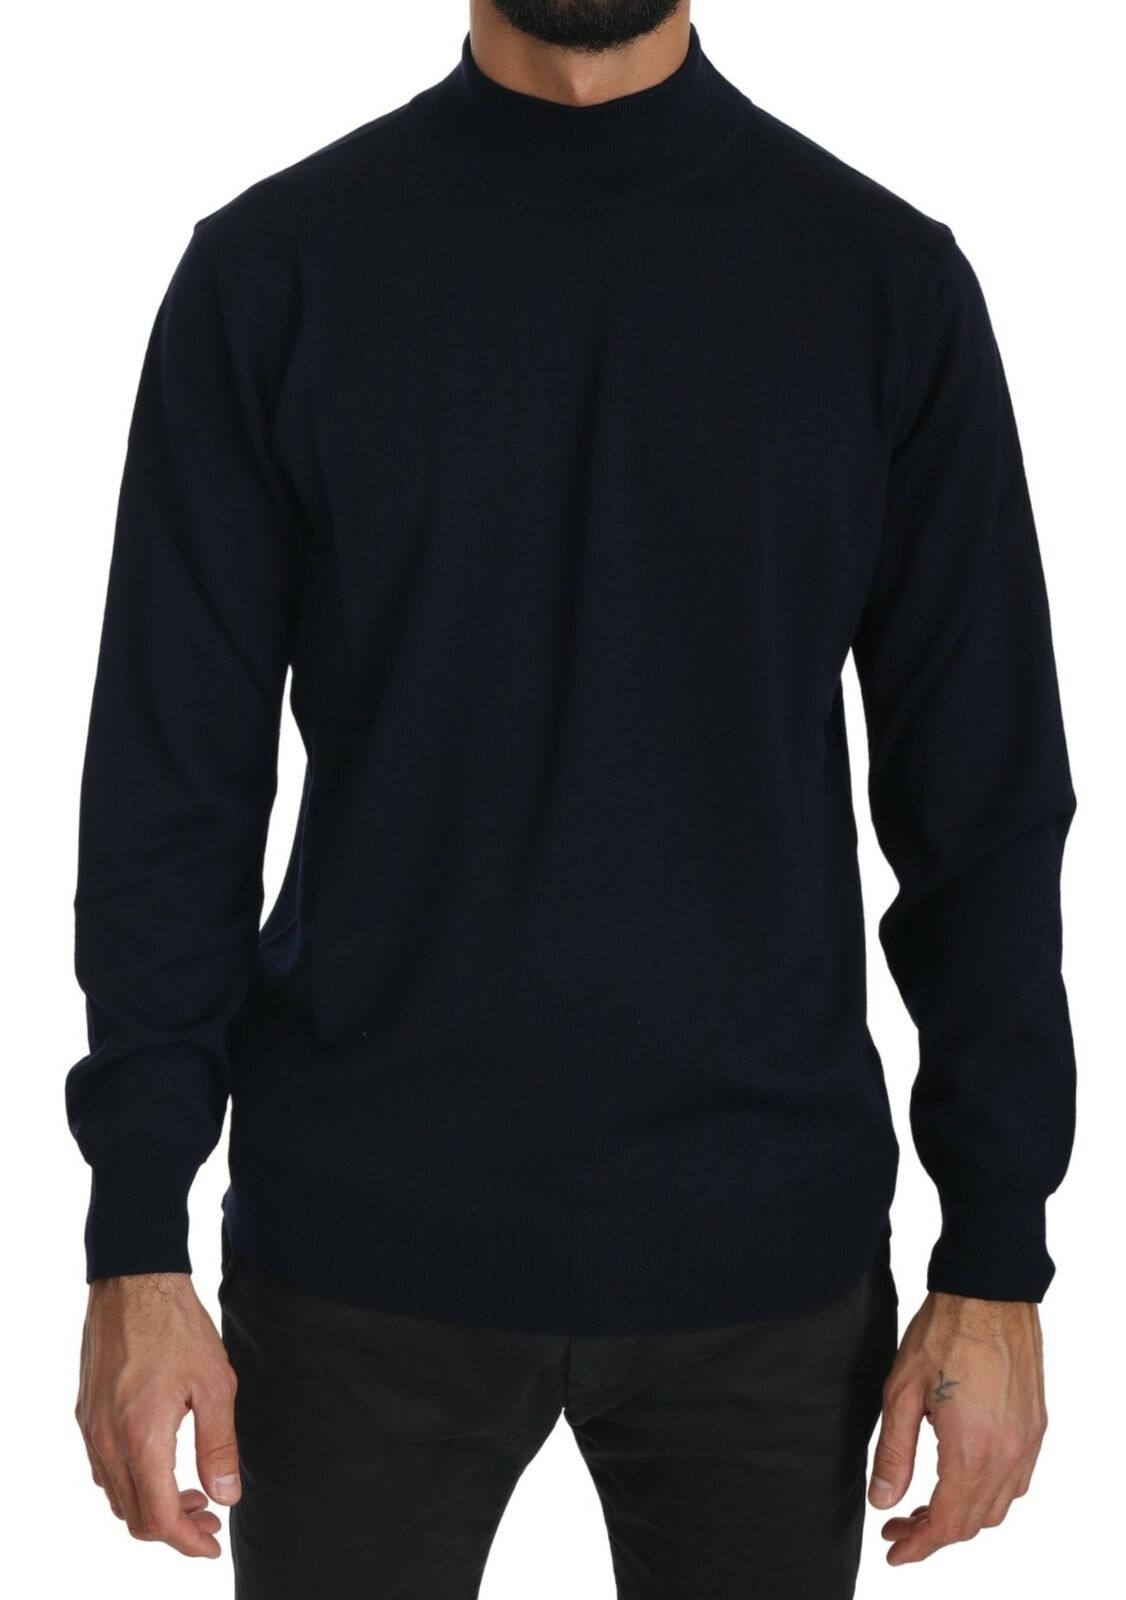 MILA SCHÖN Dark Blue Crewneck Pullover 100% Wool Sweater - Fizigo